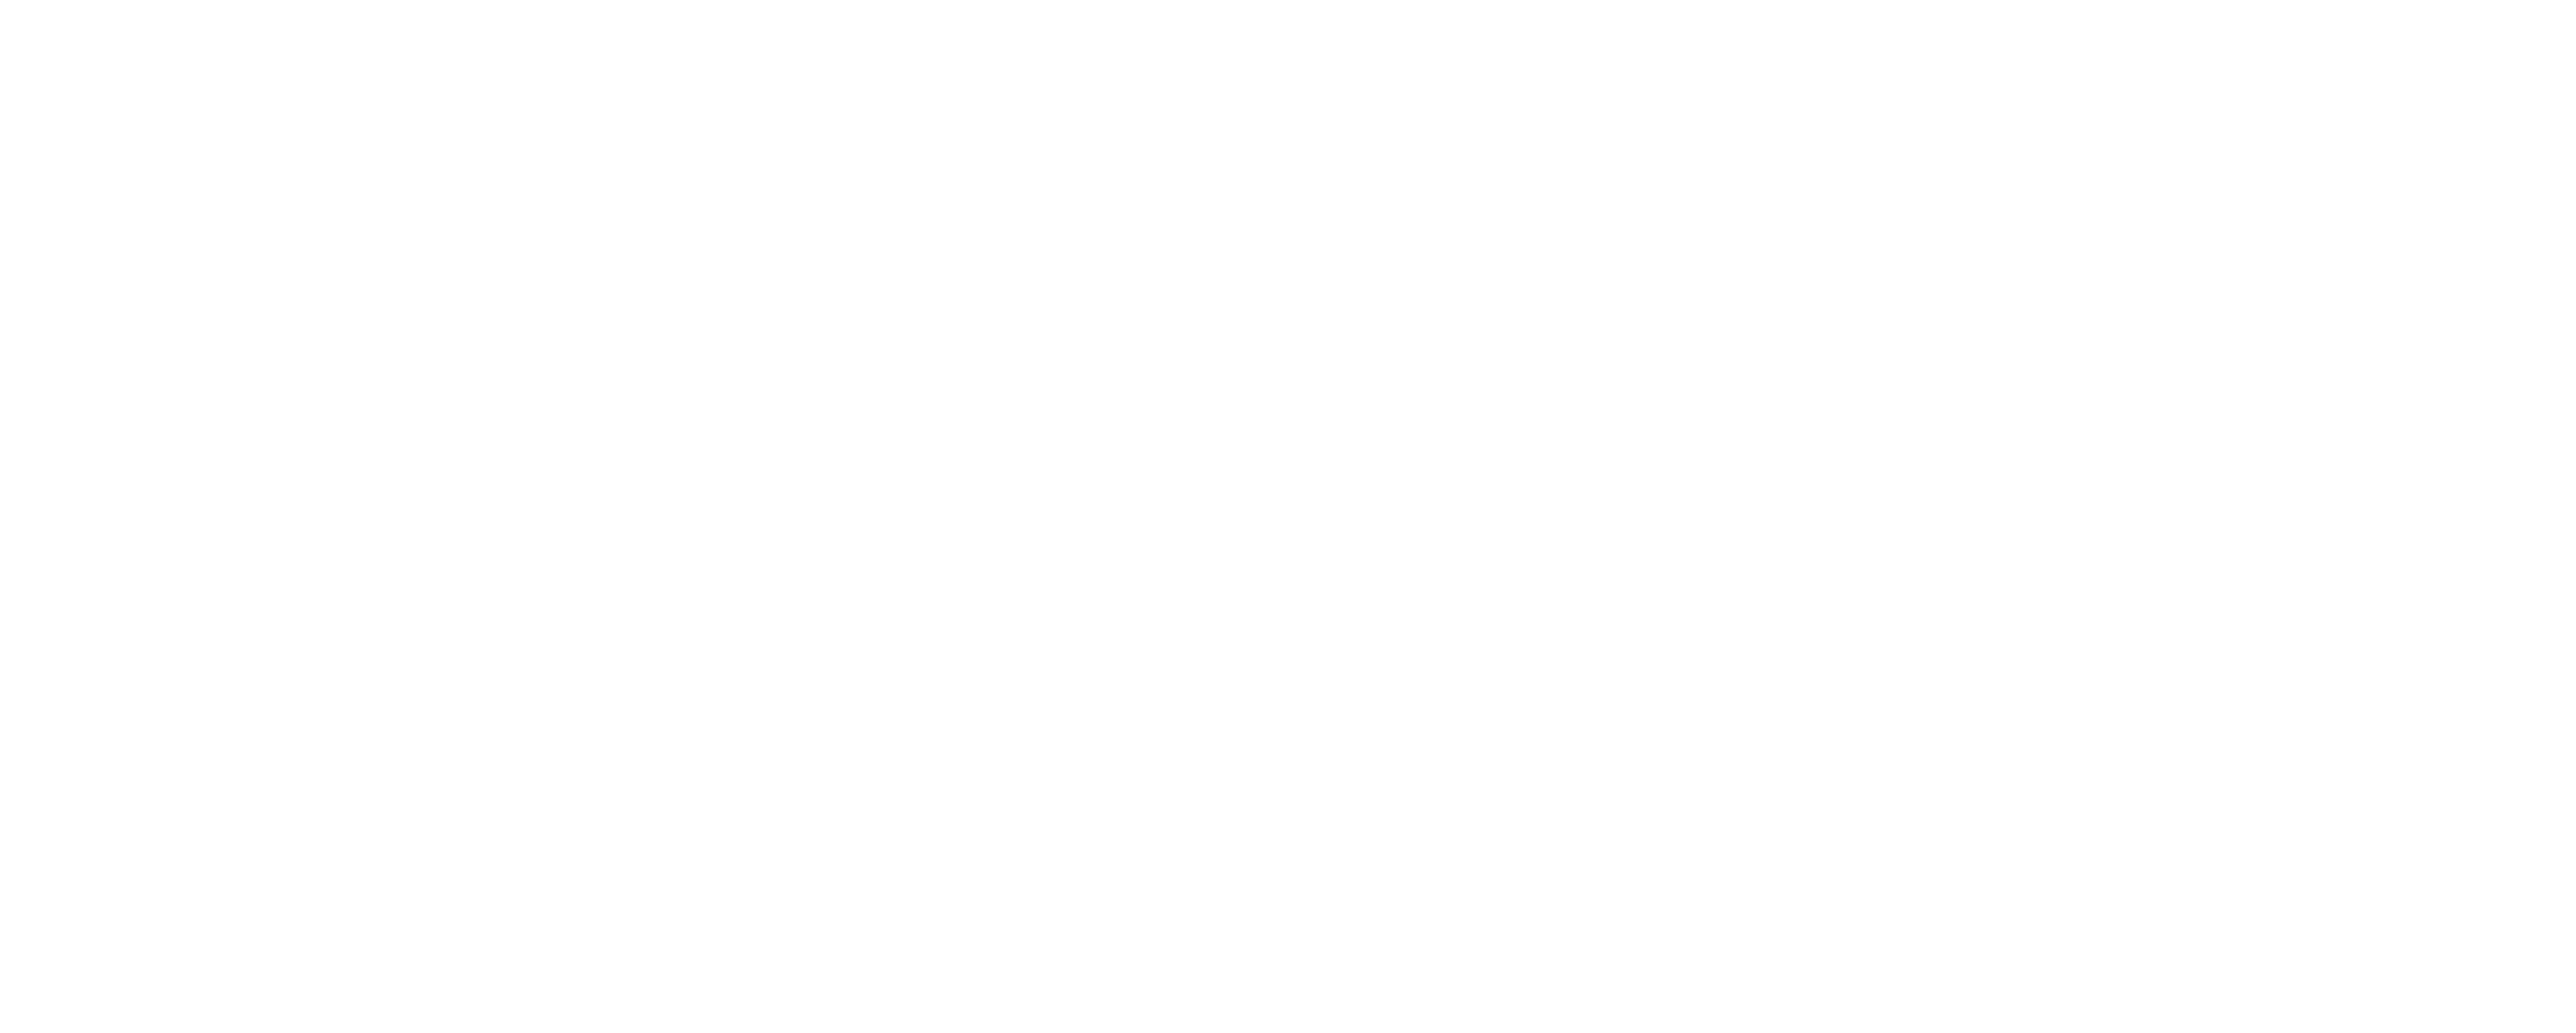 Marx Okubo